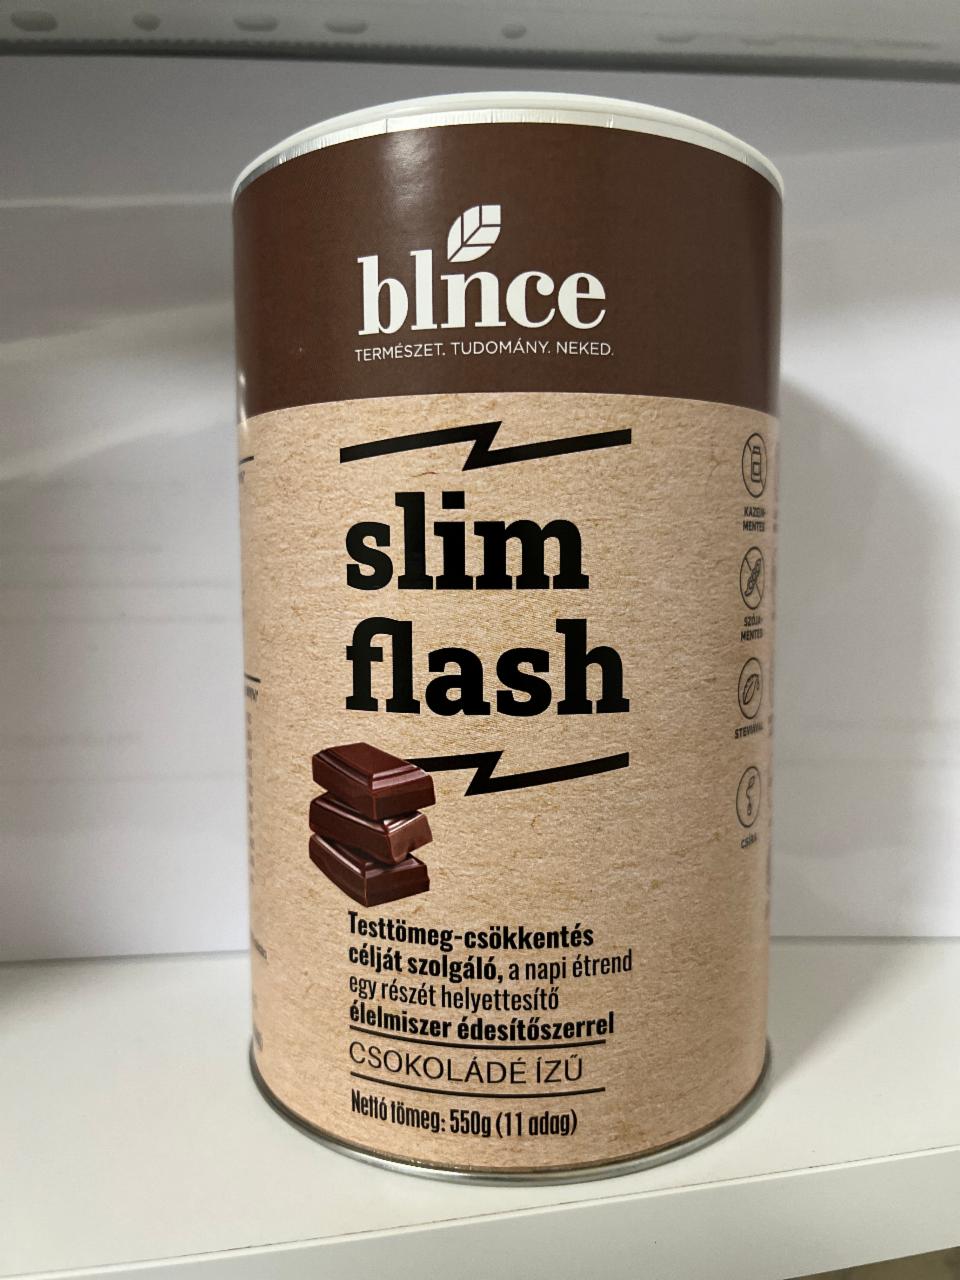 Képek - Slim flash Csokoládé ízű Blnce